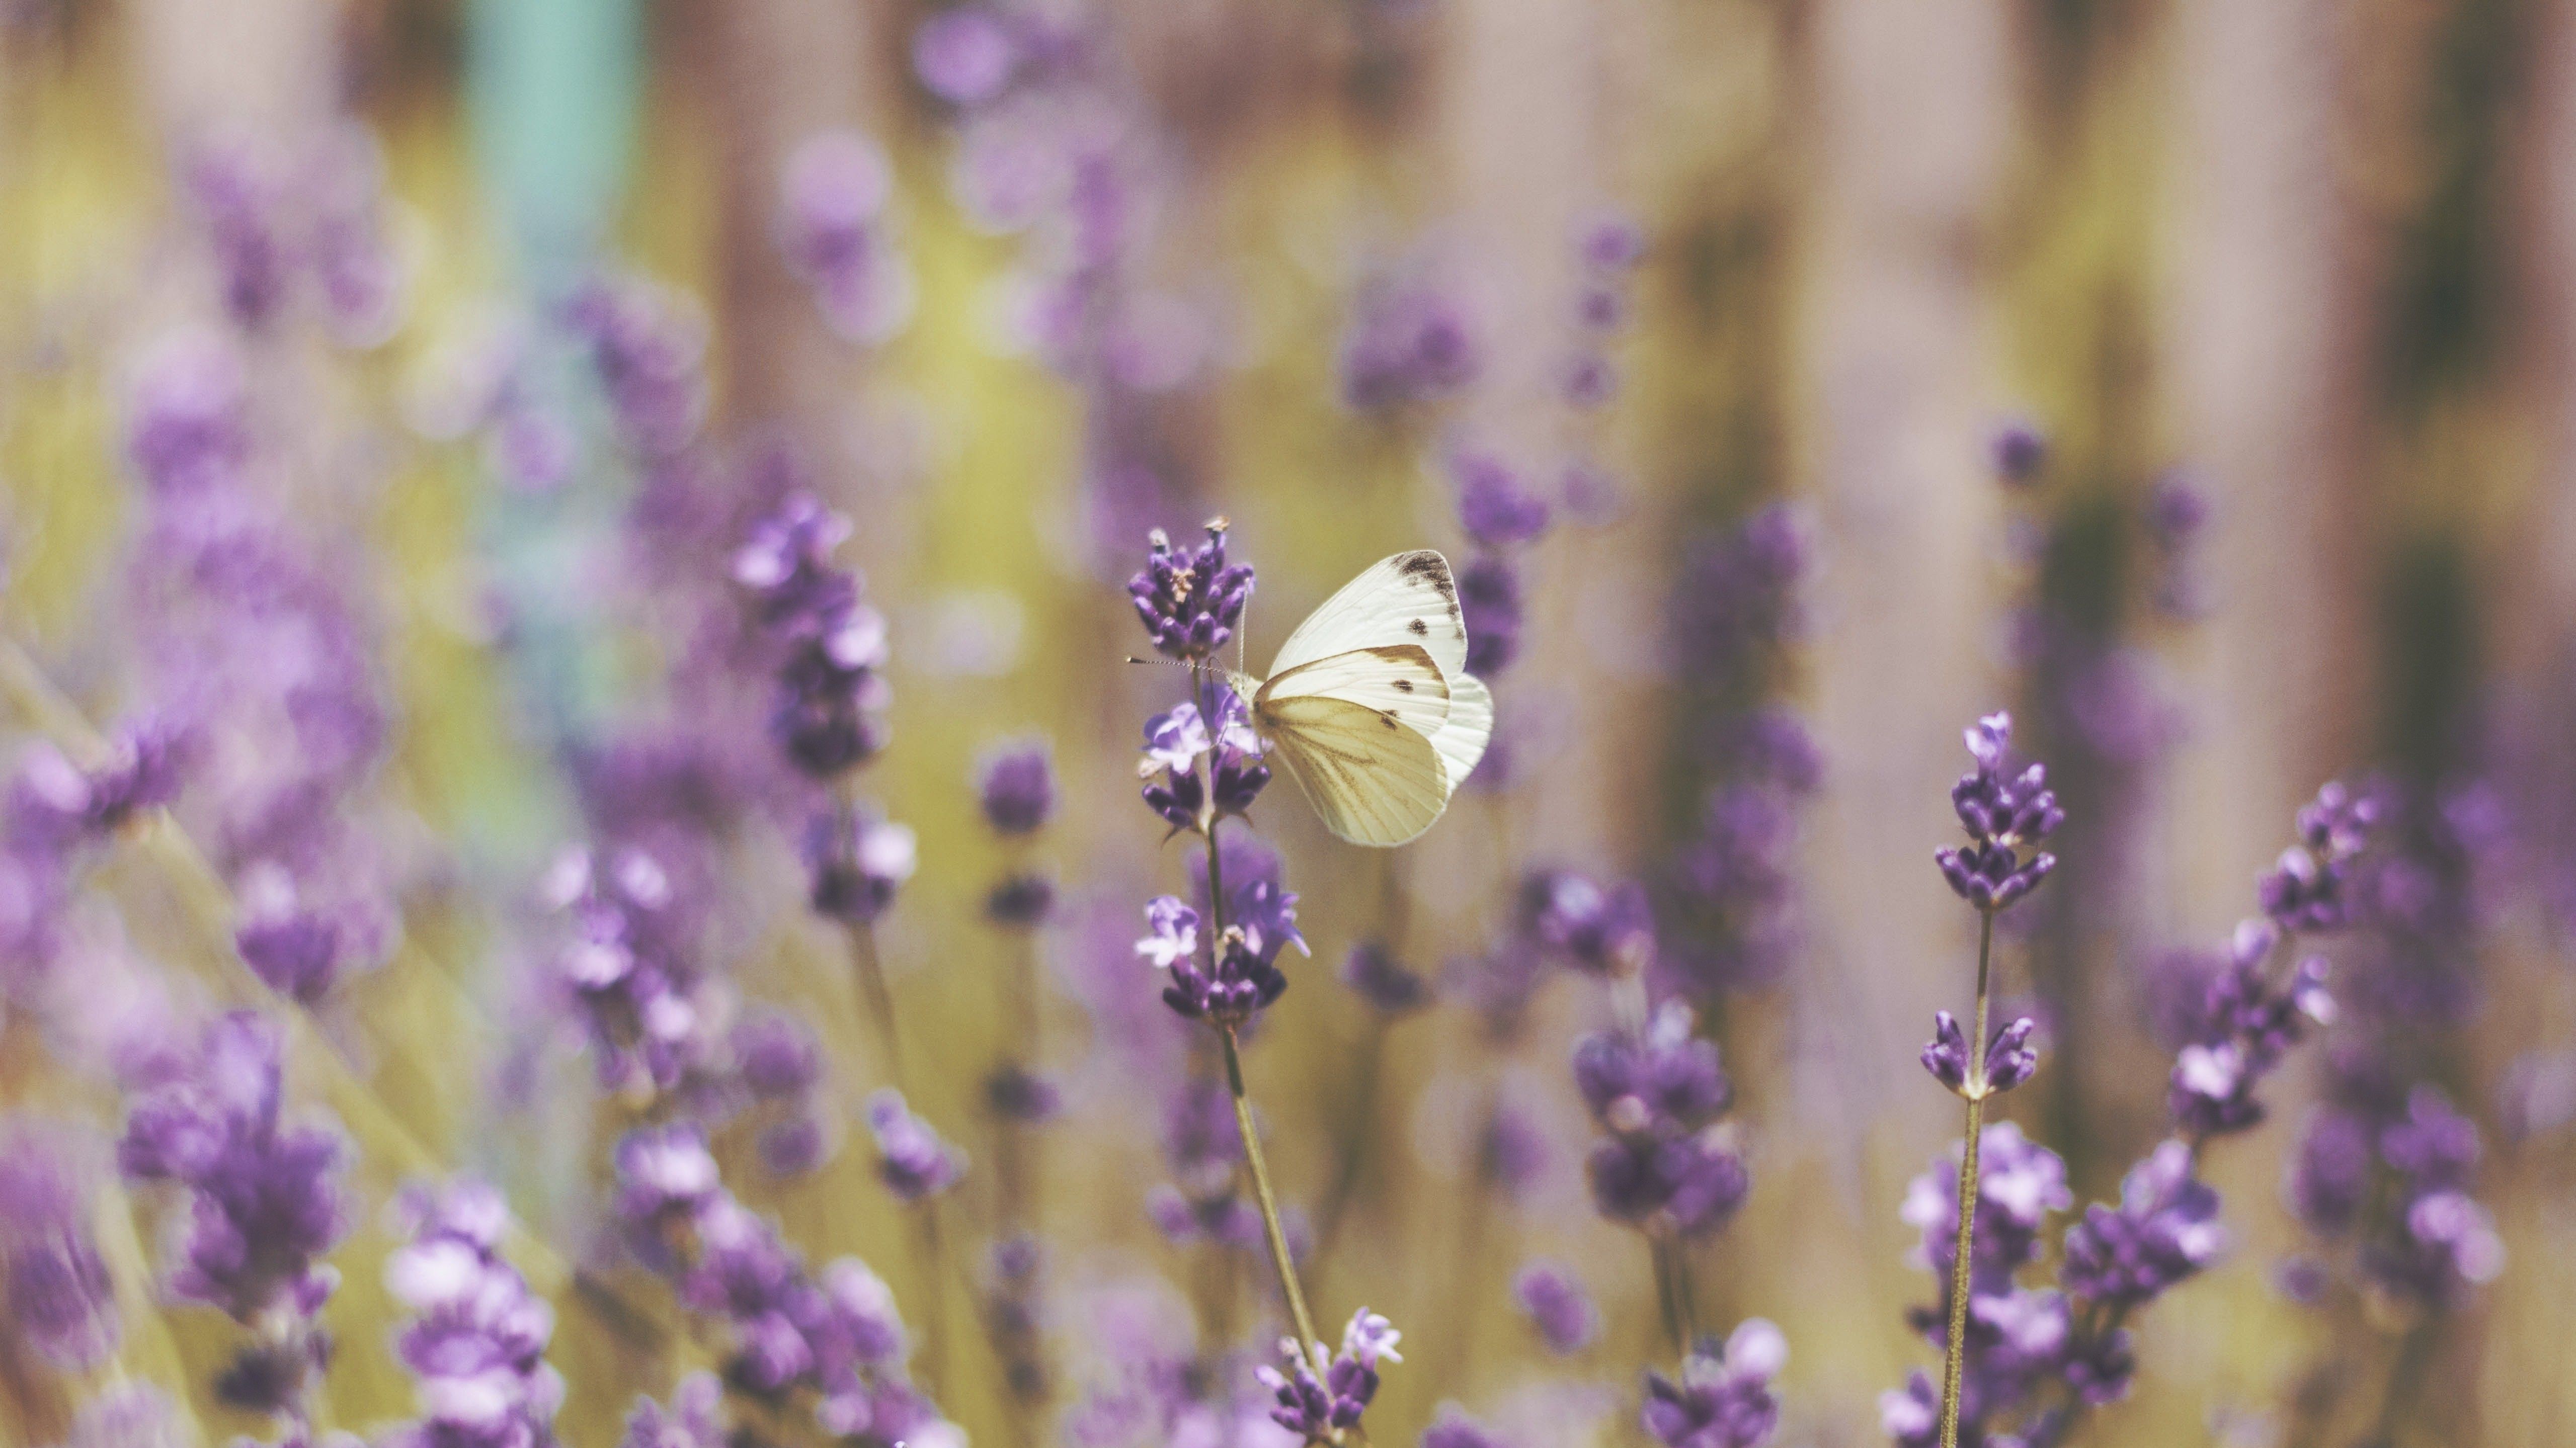 Cute White Butterfly On Lavender Flowers 5k Wallpaper He Was